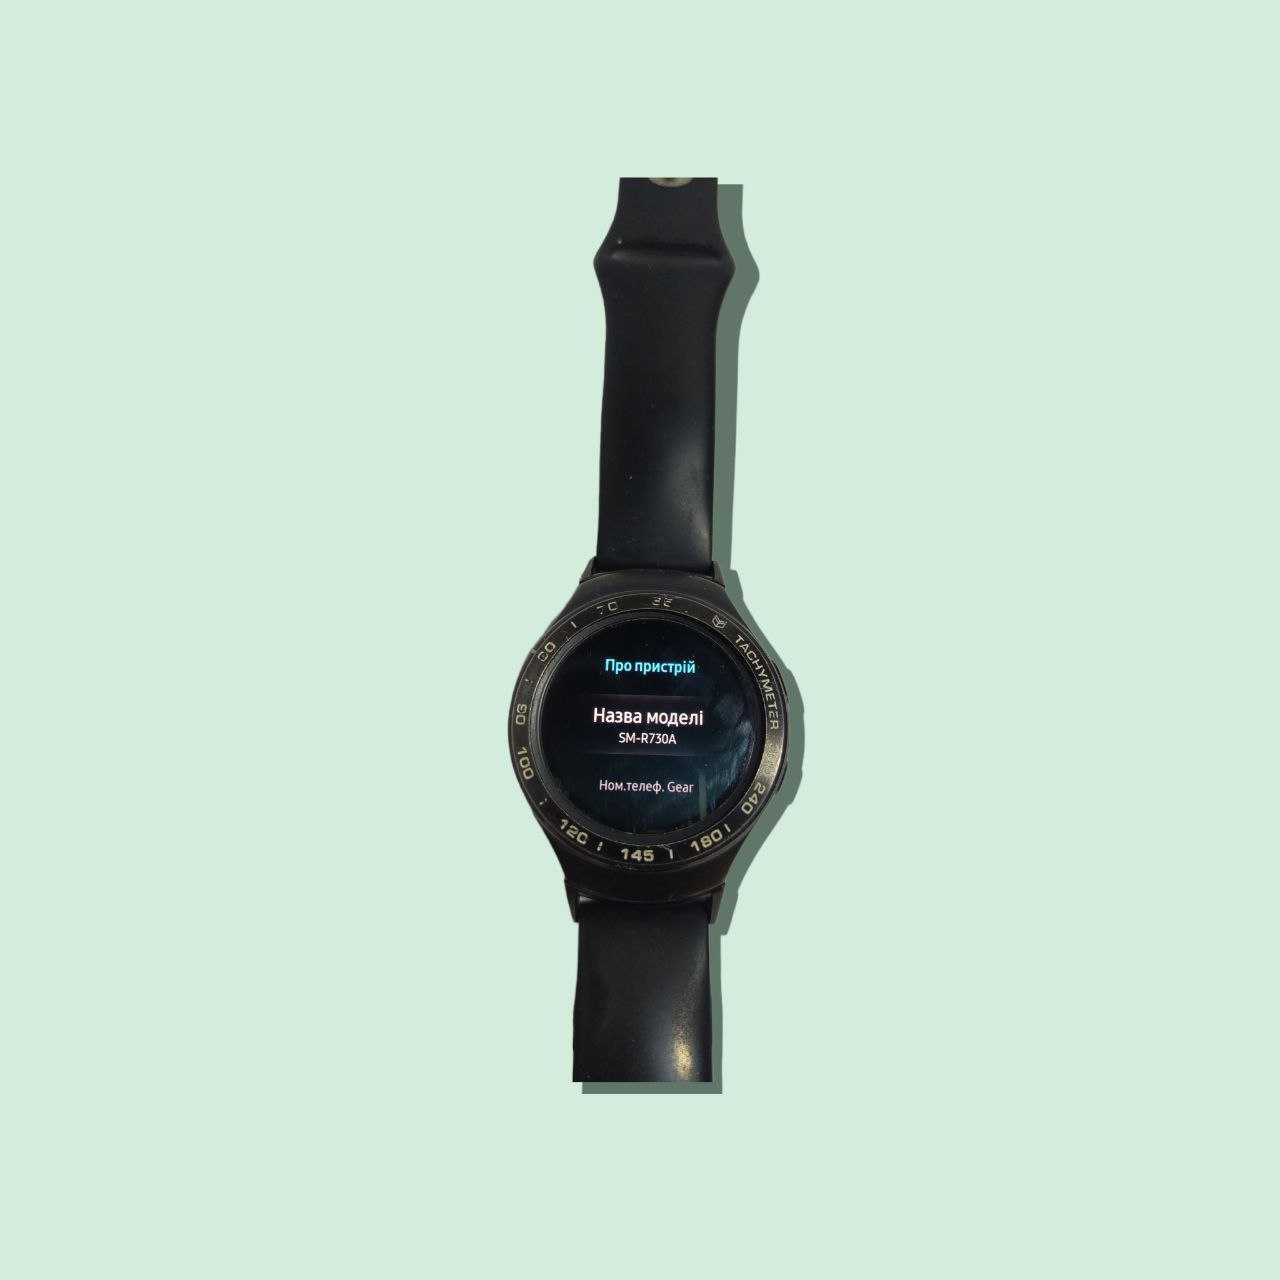 Розумний годинник Samsung Gear S2 в хорошому станні, оригінал